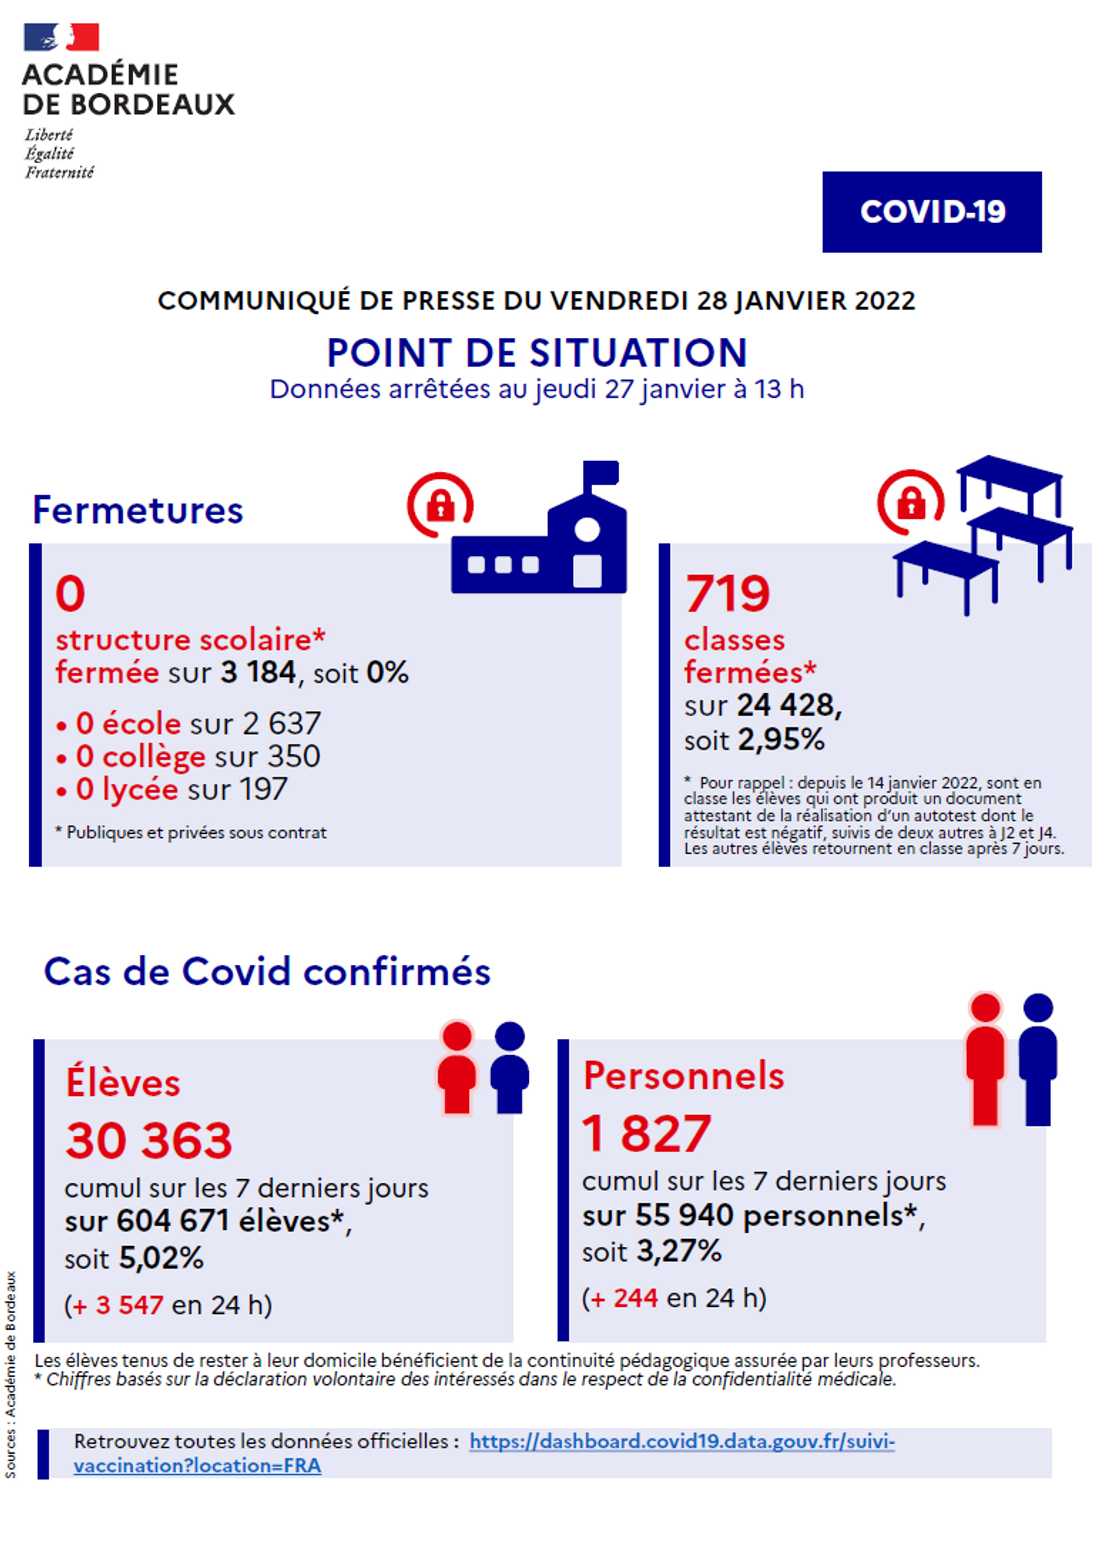 Point de situation Covid-19 dans l'académie de Bordeaux du 28/01/22